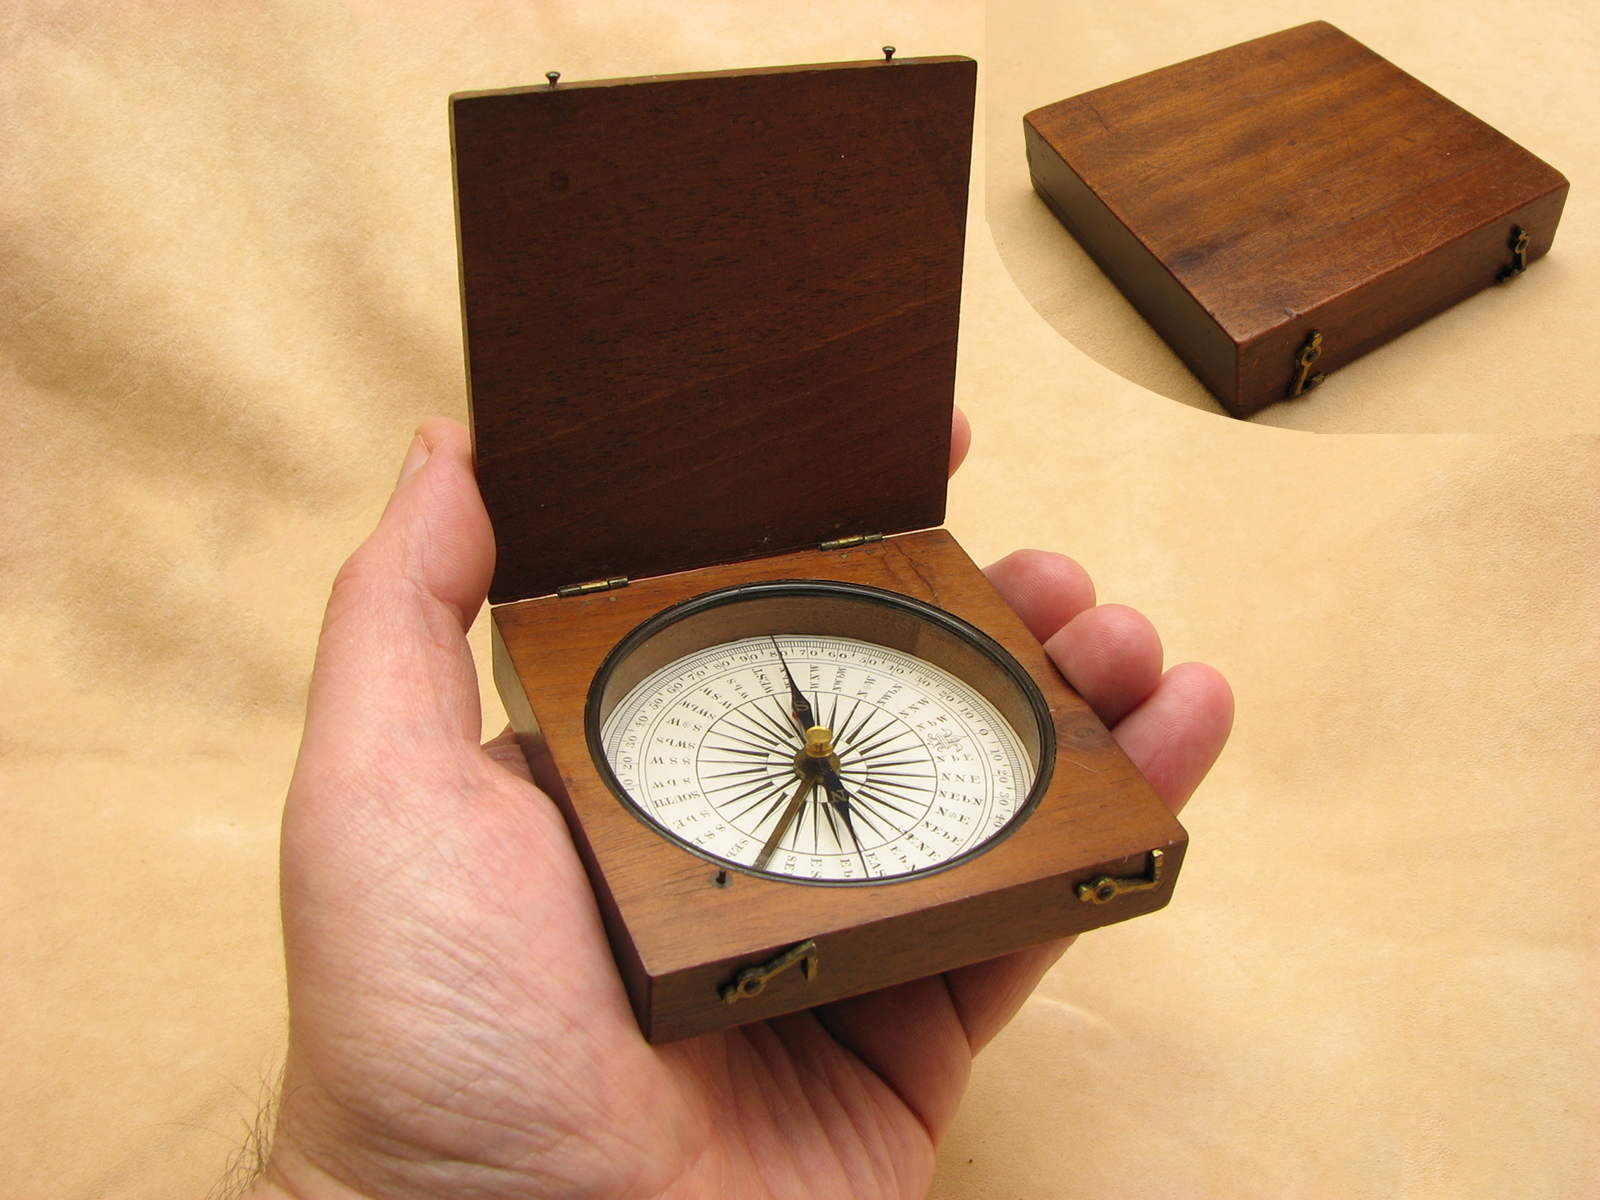 Early Victorian mahogany cased pocket compass, circa 1860